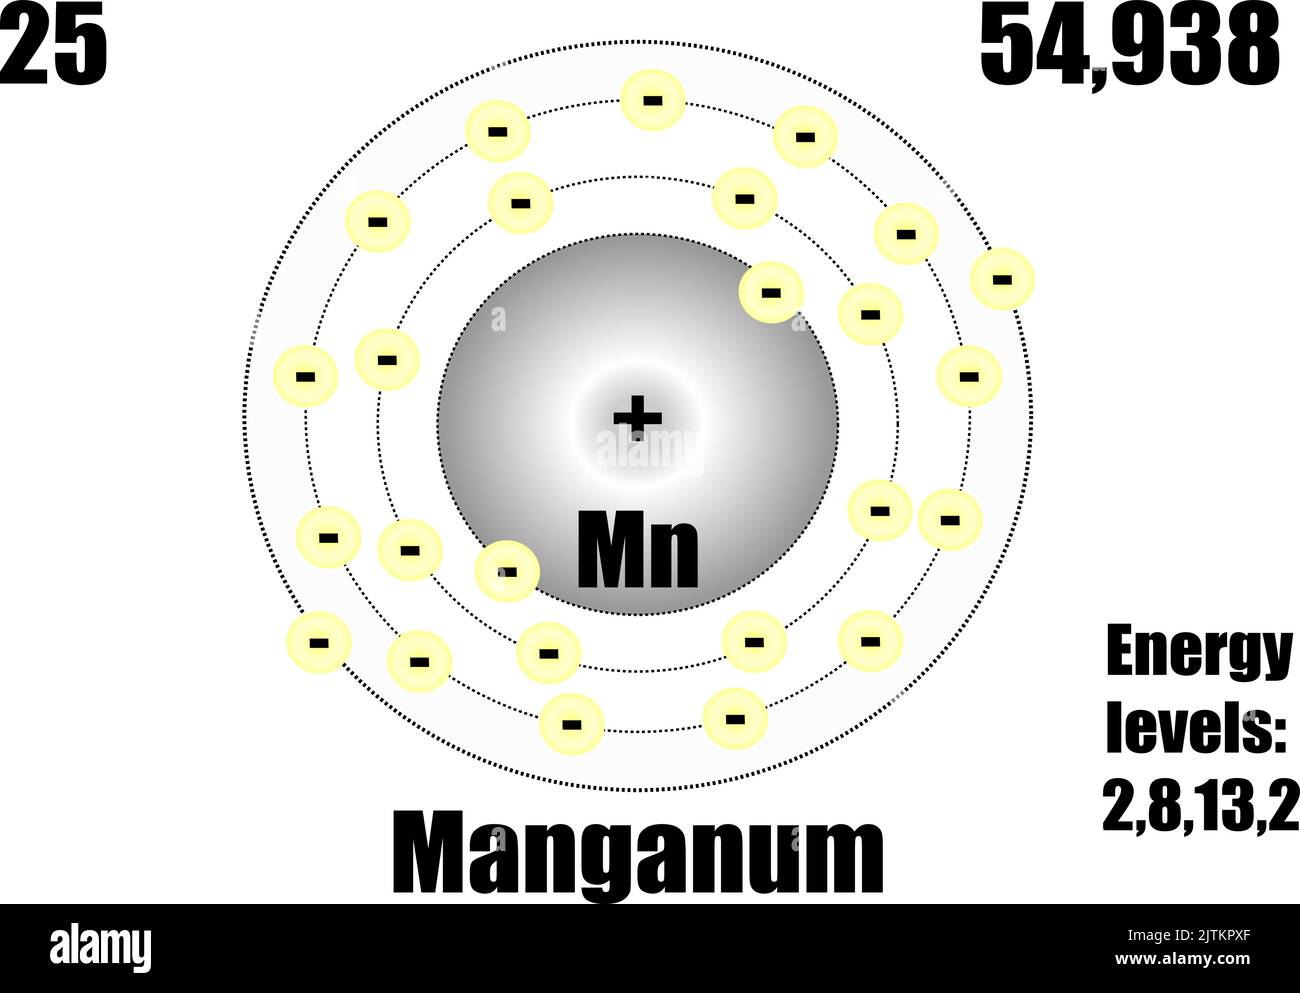 Атом марганца. Модель атома марганца. Как выглядит атом марганца. Ядро атома марганца